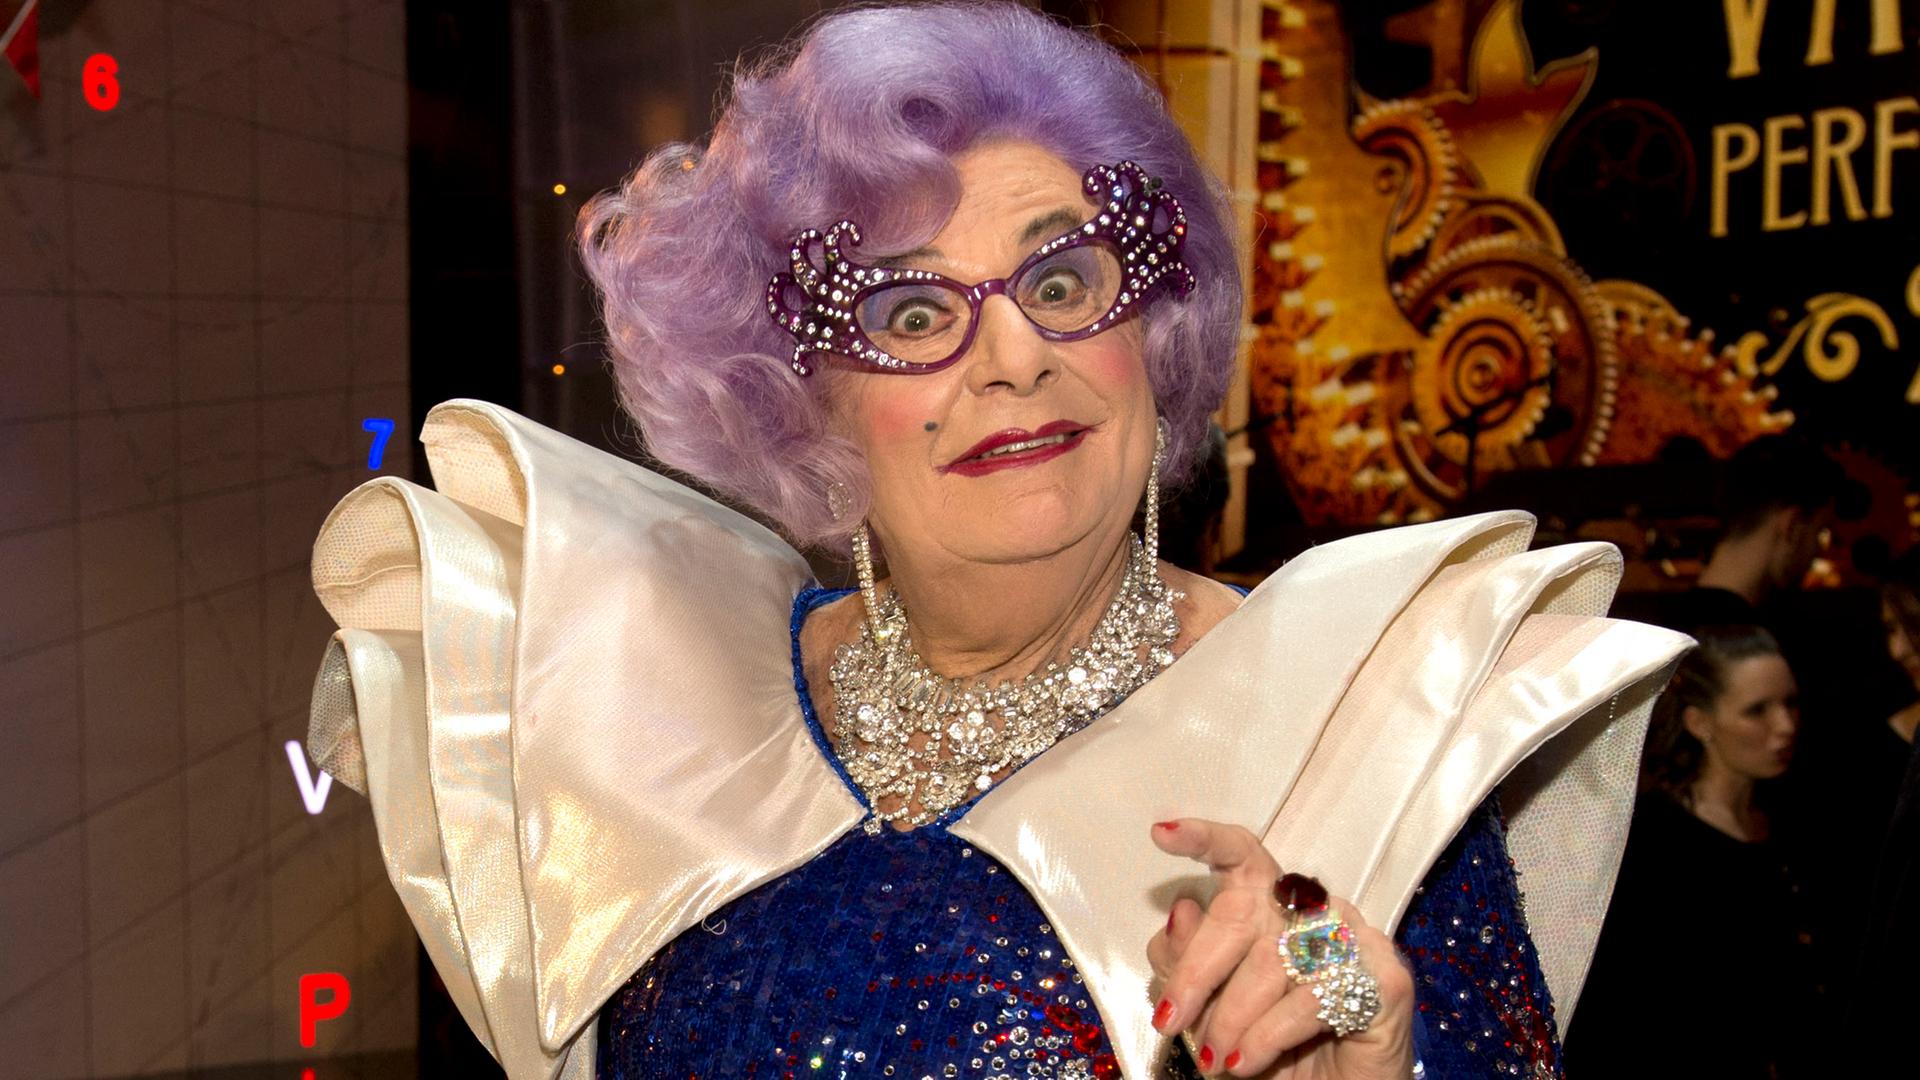 Das ist der Komiker Barry Humphries in seiner Rolle als Dame Edna Everage. Er trägt eine lila Perücke und eine strassbesetzte Brille.